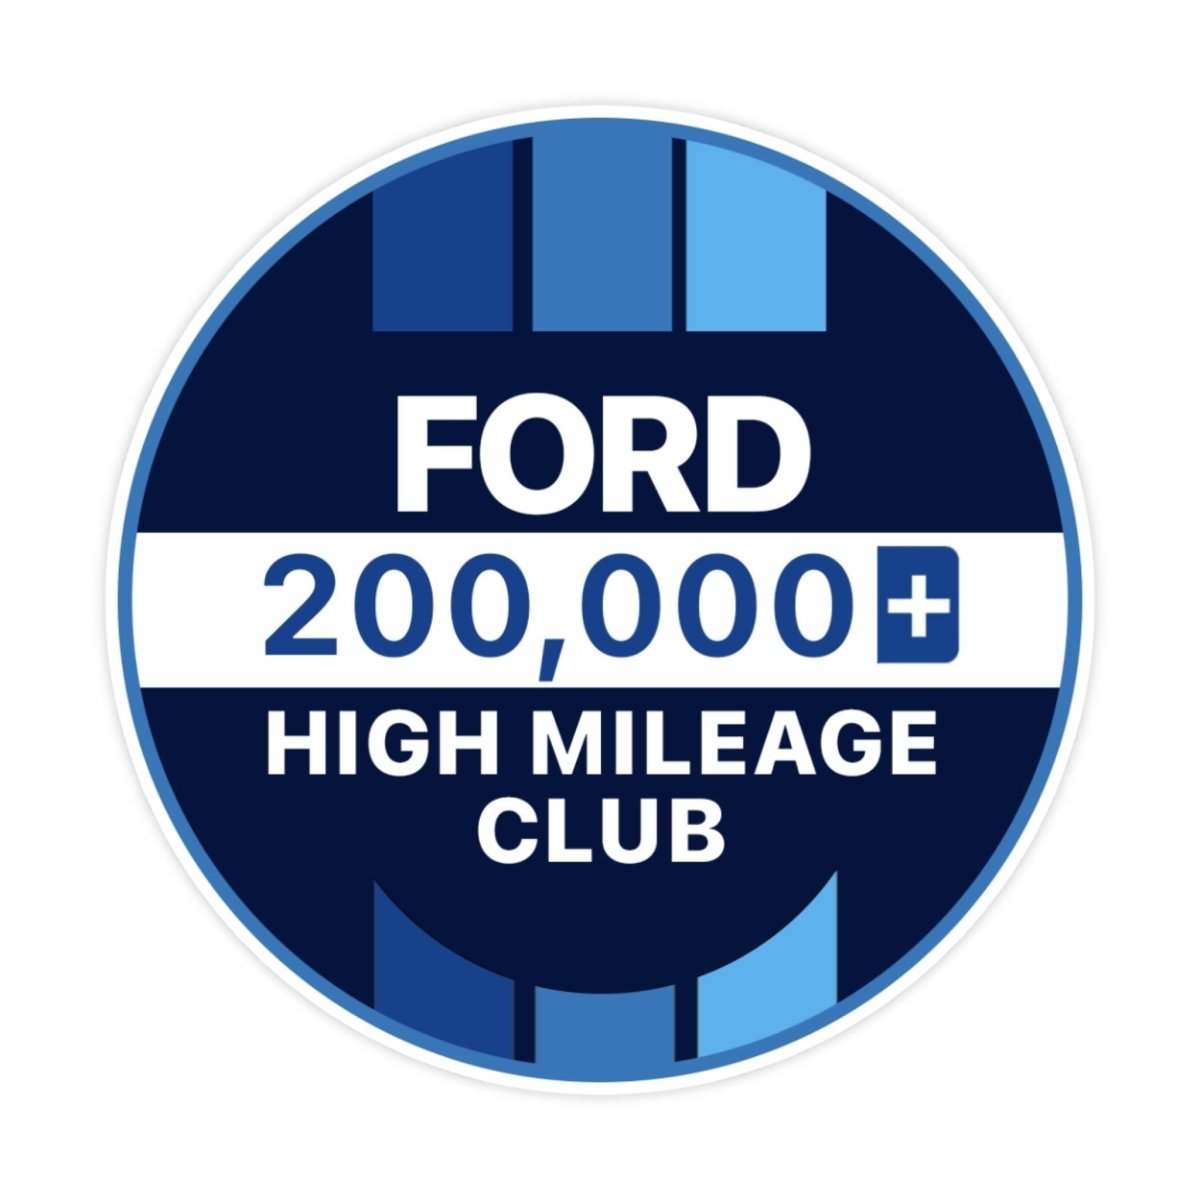 Ford 300k High Mileage Club Sticker - stickerbullFord 300k High Mileage Club StickerRetail StickerstickerbullstickerbullTaylor_Ford200k [#119]200kFord 300k High Mileage Club Sticker